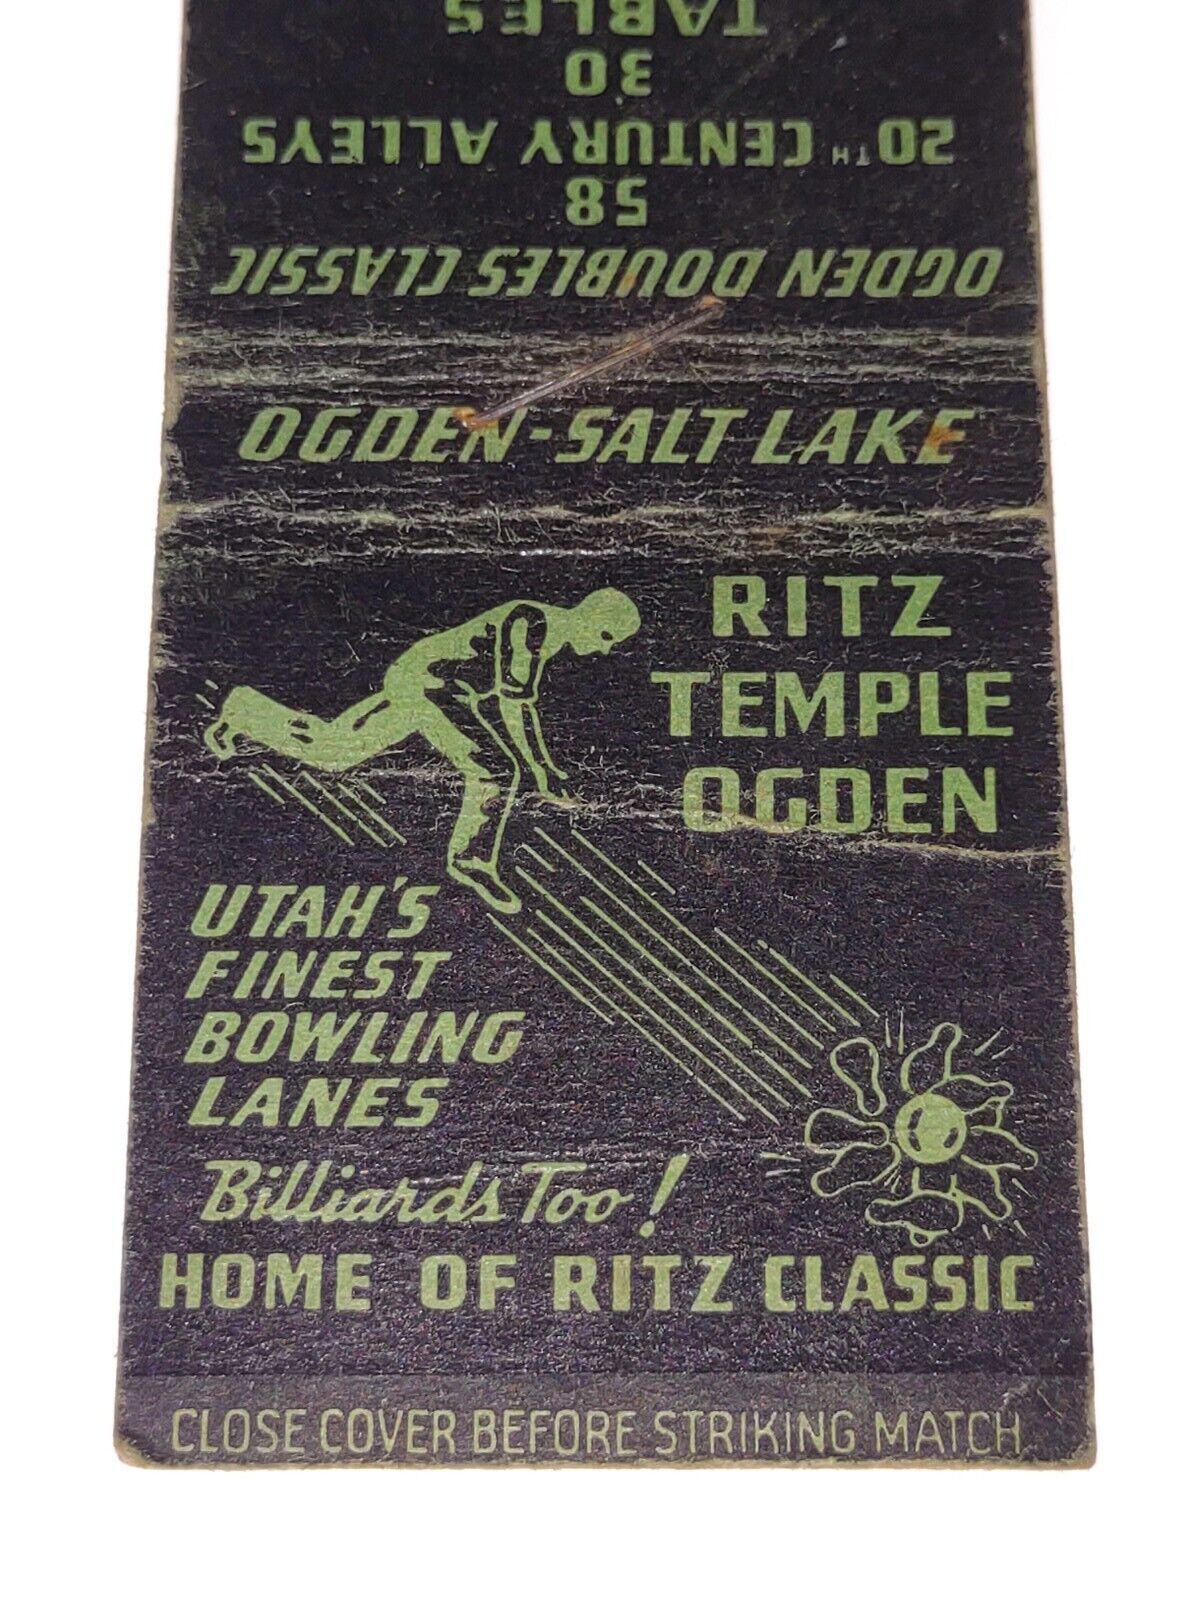 Vtg Matchbook Cover Ritz Temple Ogden Utah Bowling Billiards History